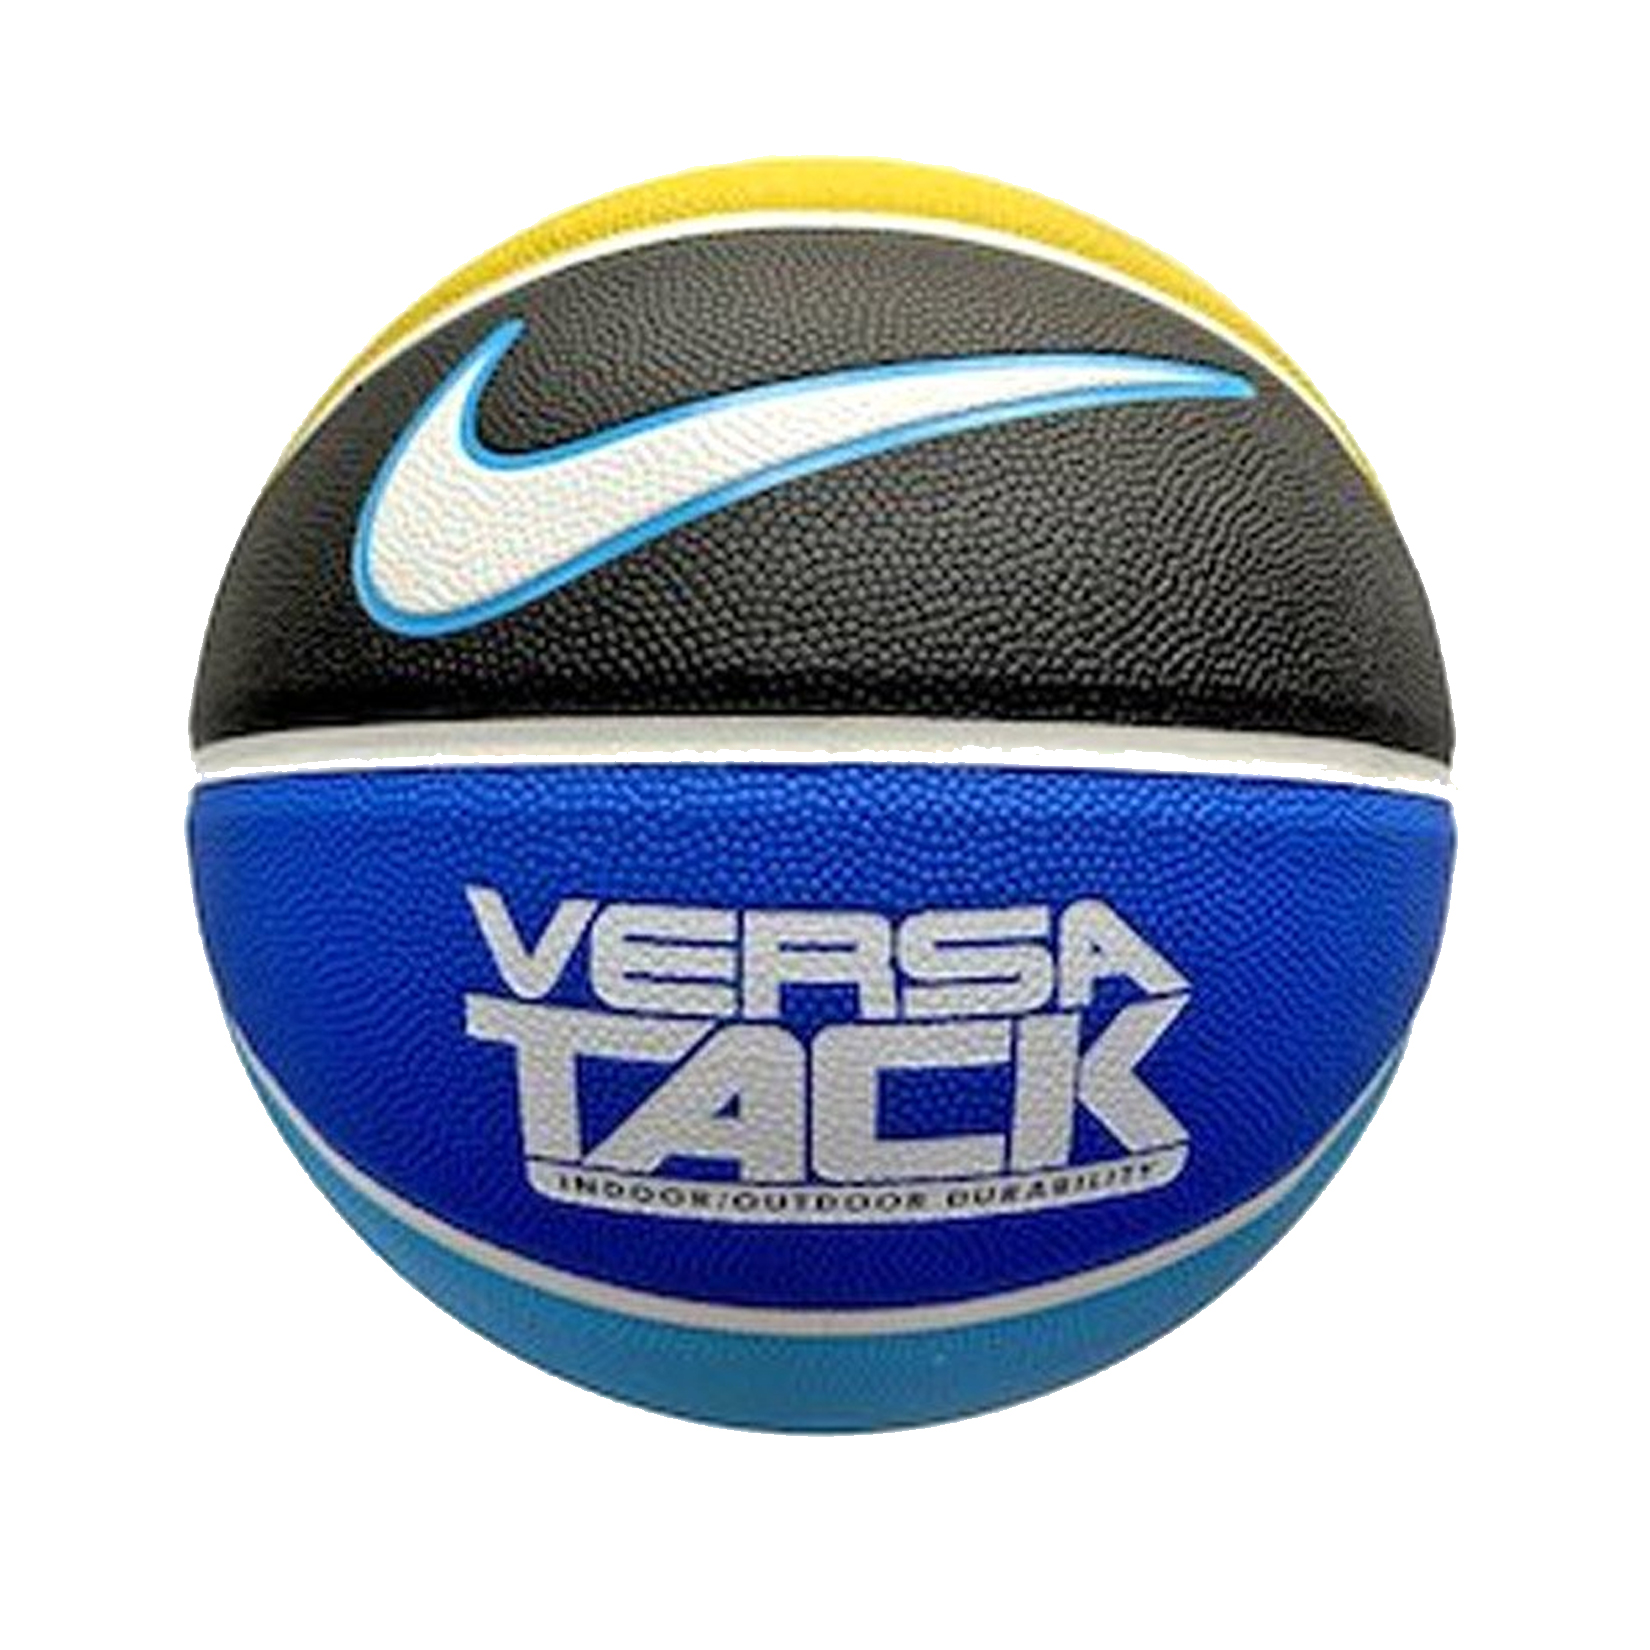 Nike Versa Tack 8P 7 Μπλε - Κιτρινο 